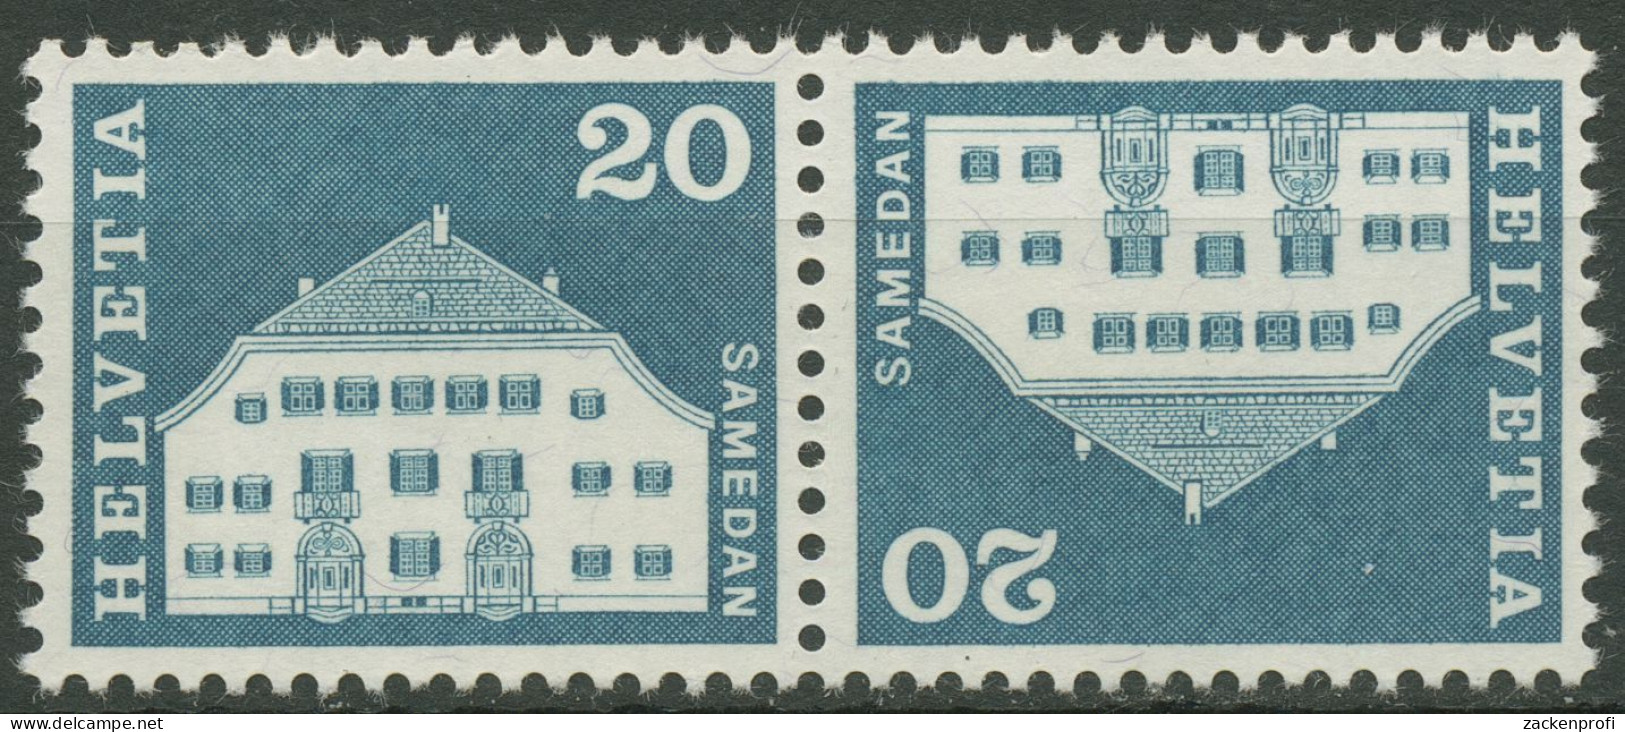 Schweiz 1968 Bauwerke Planta-Haus Samedan 881 Kehrdruck K 51 Postfrisch - Nuevos